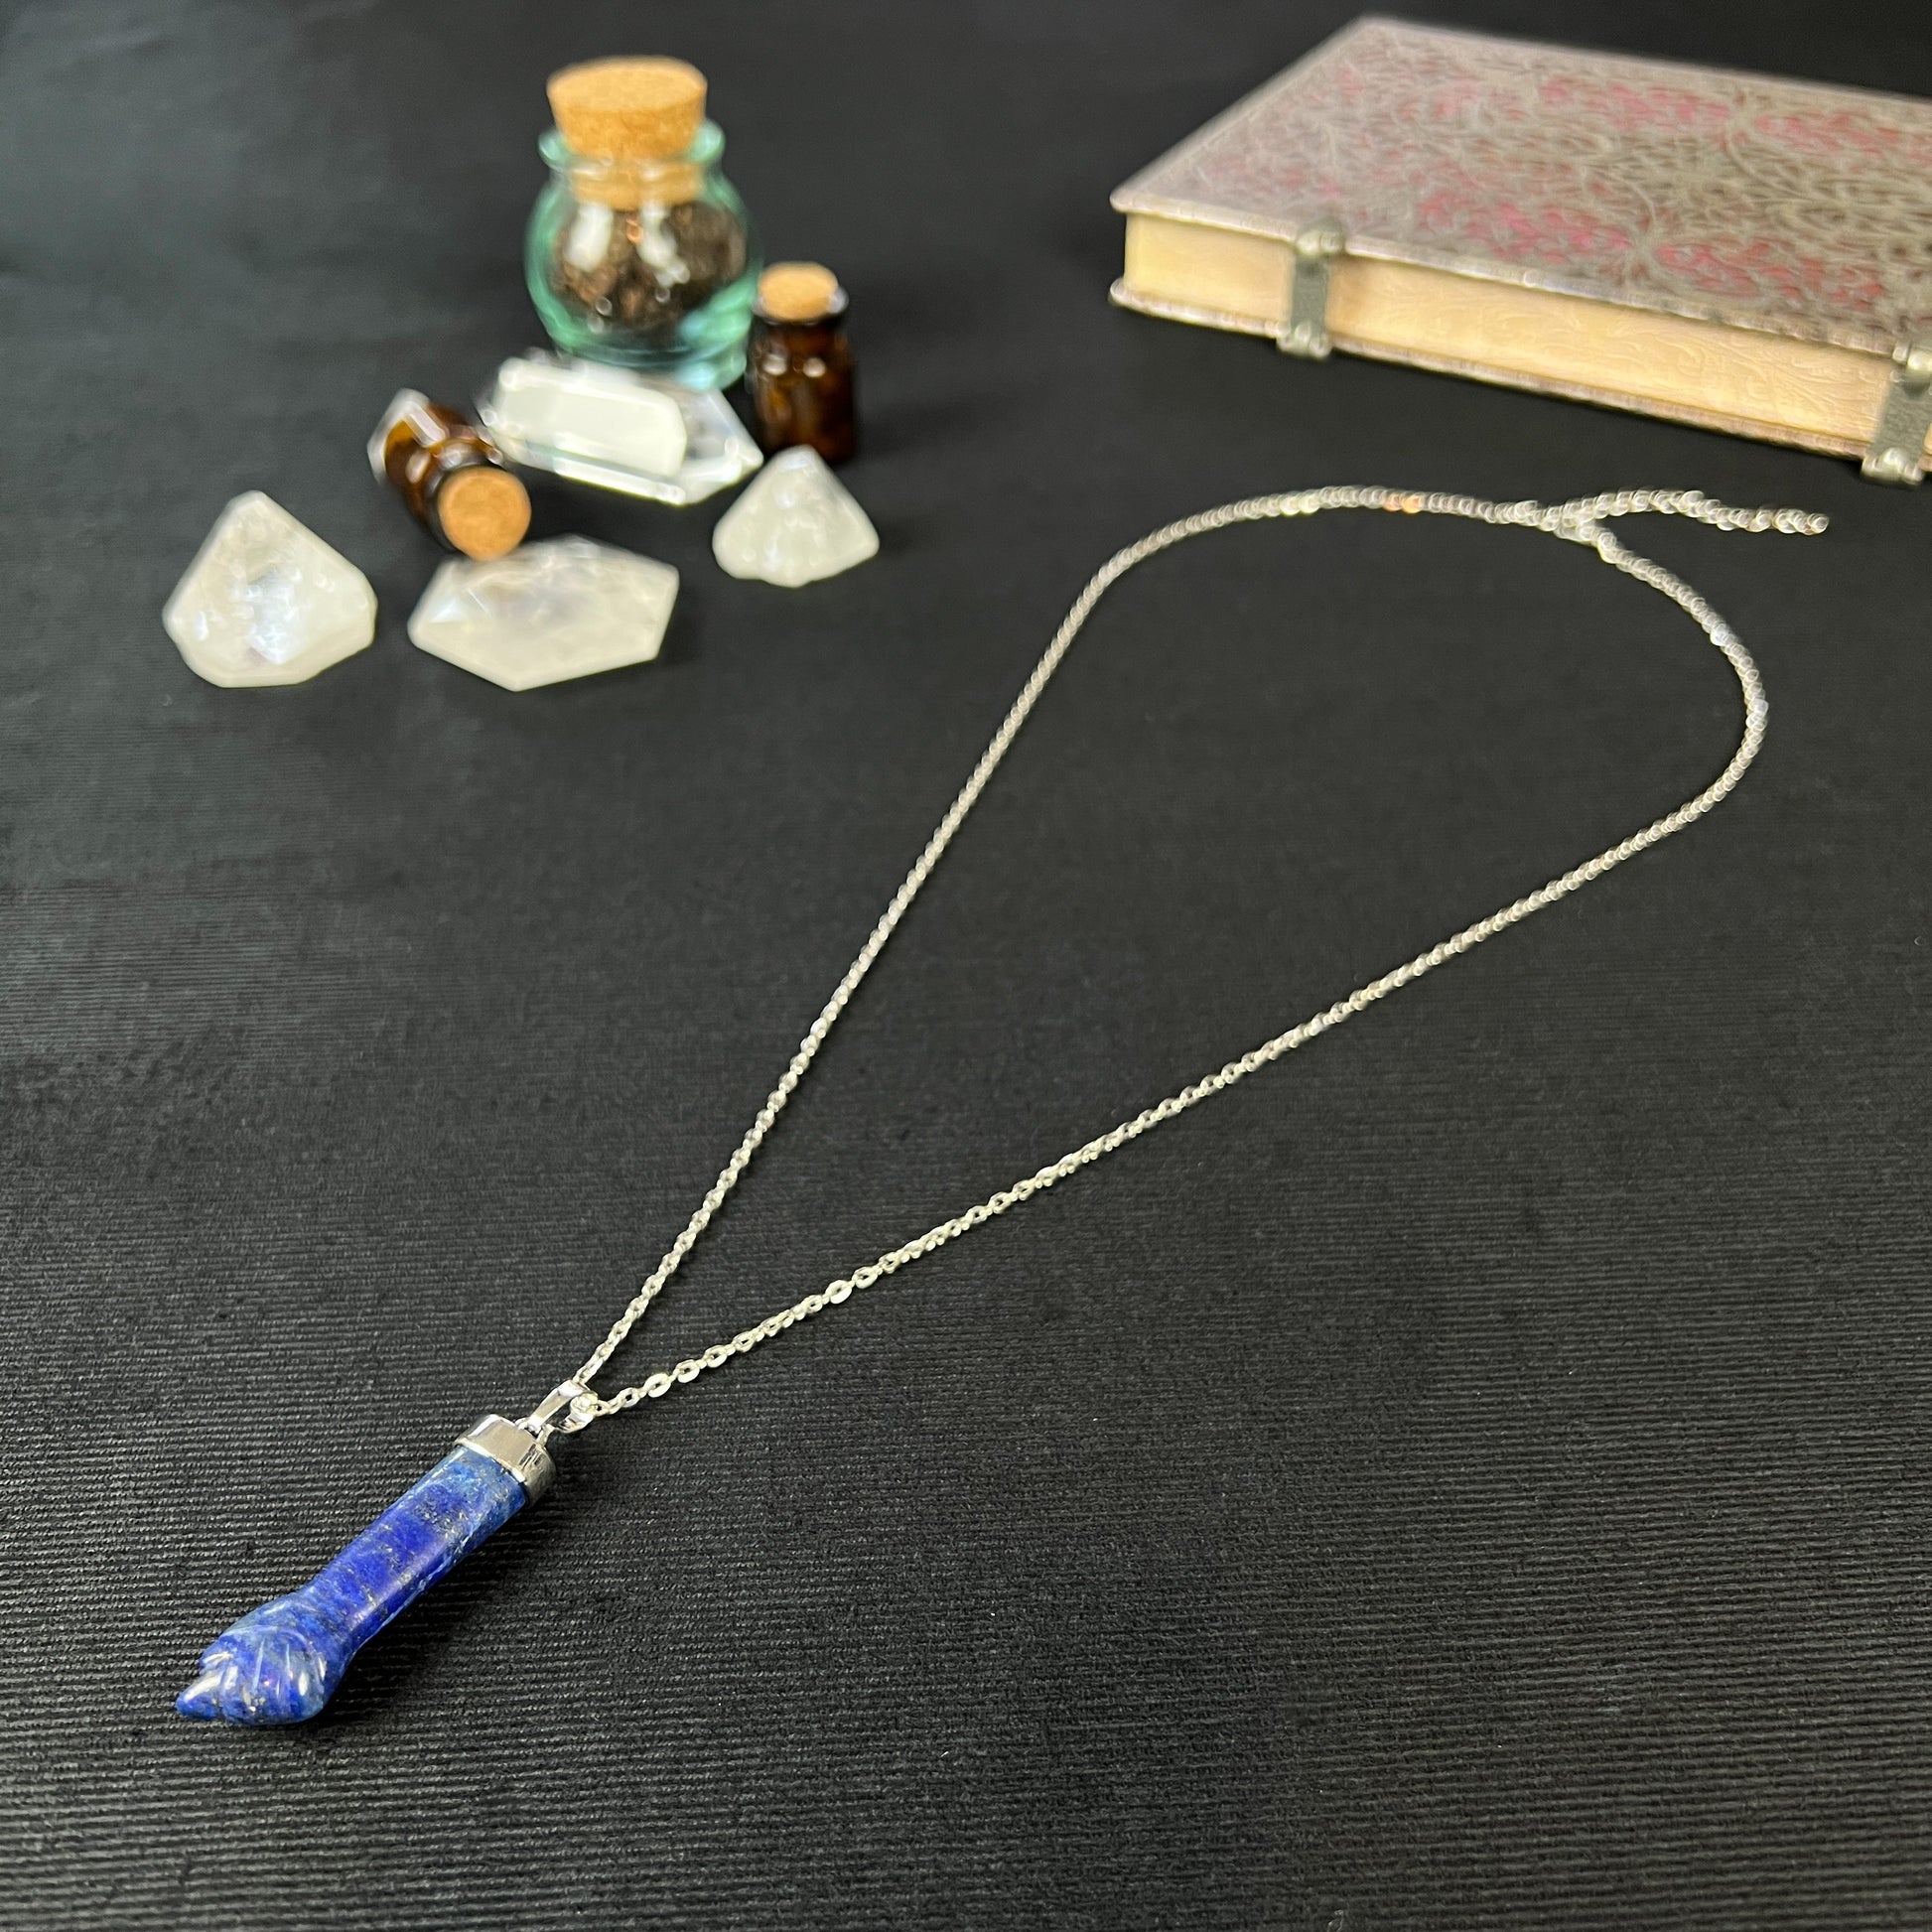 Figa hand lapis lazuli necklace fertility amulet evil eye necklace lucky charm figa pendant gemstone necklace